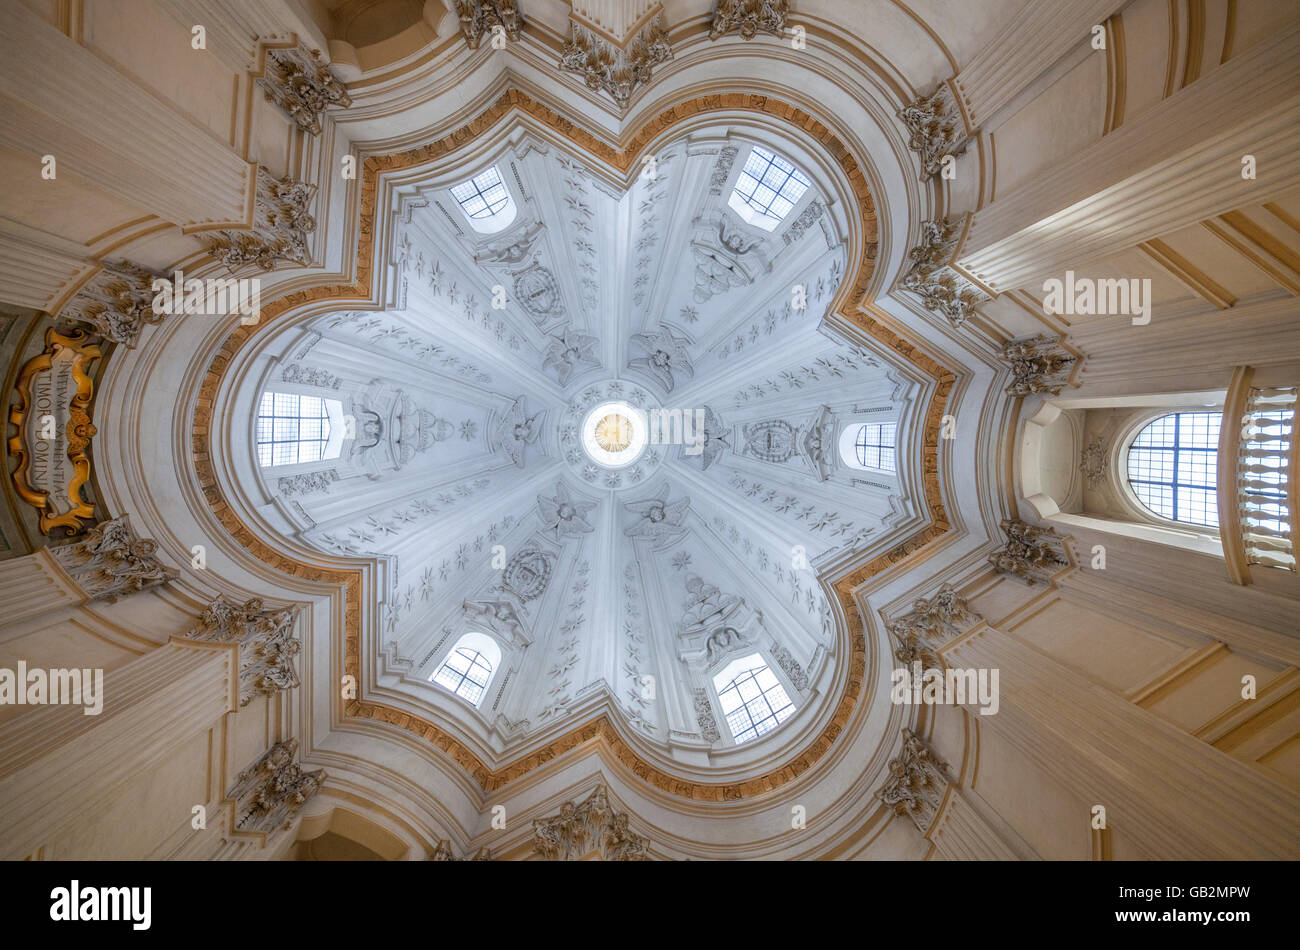 The dome of Sant'Ivo alla Sapienza by Francesco Borromini Stock Photo